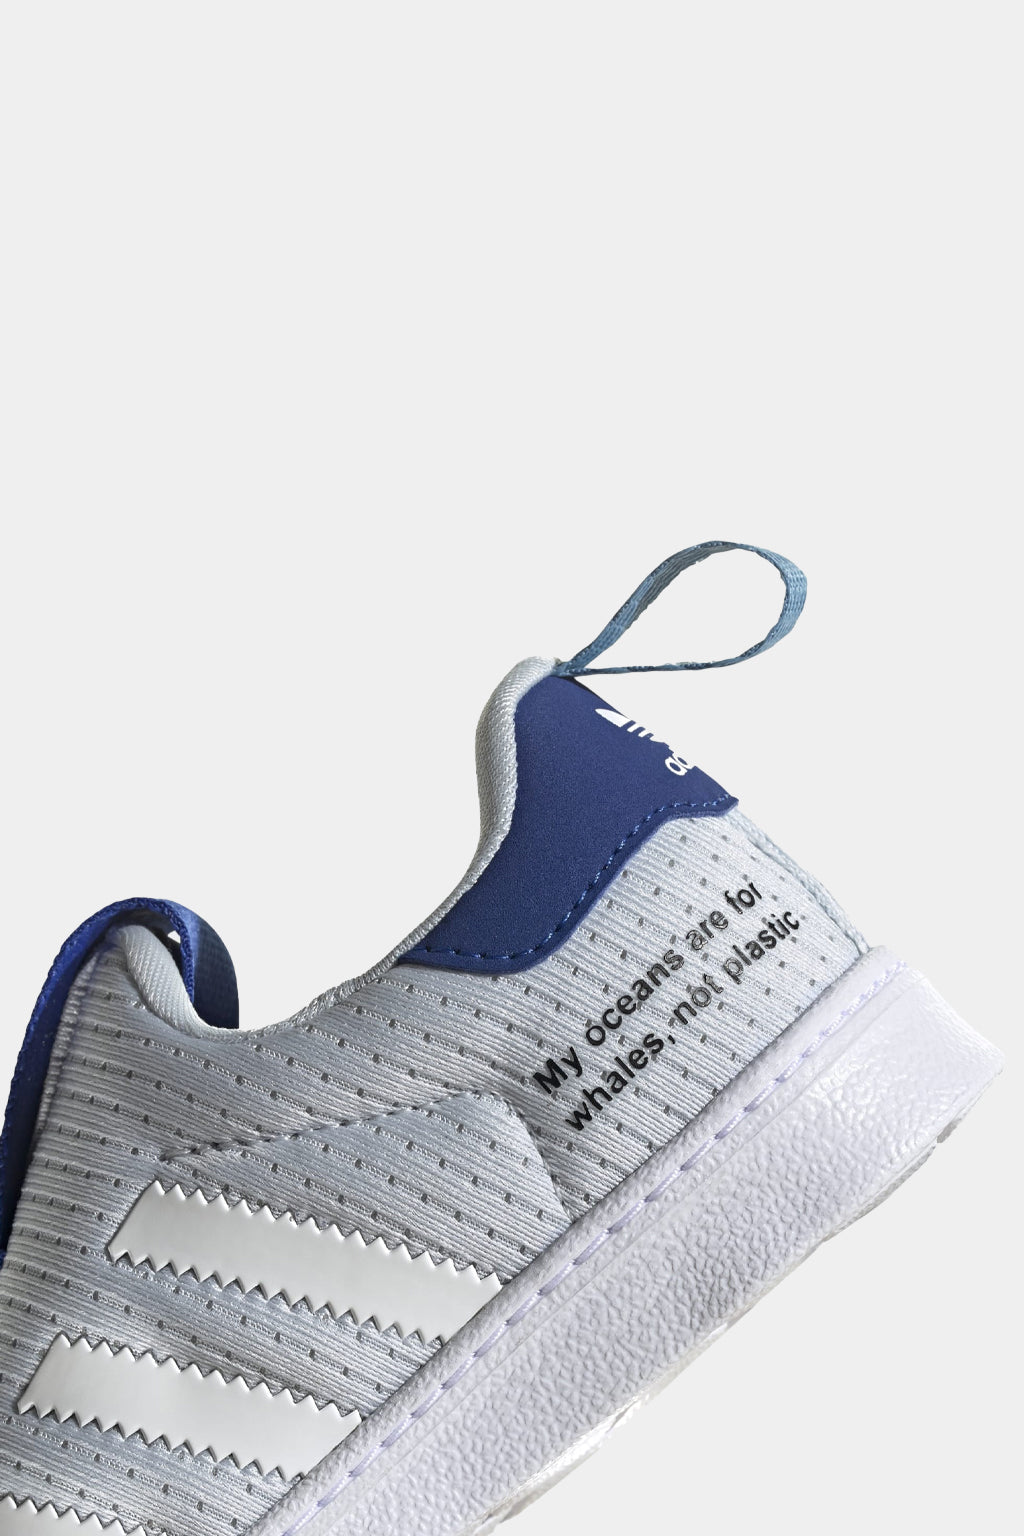 Adidas Originals - Superstar 360 Primeblue Shoes